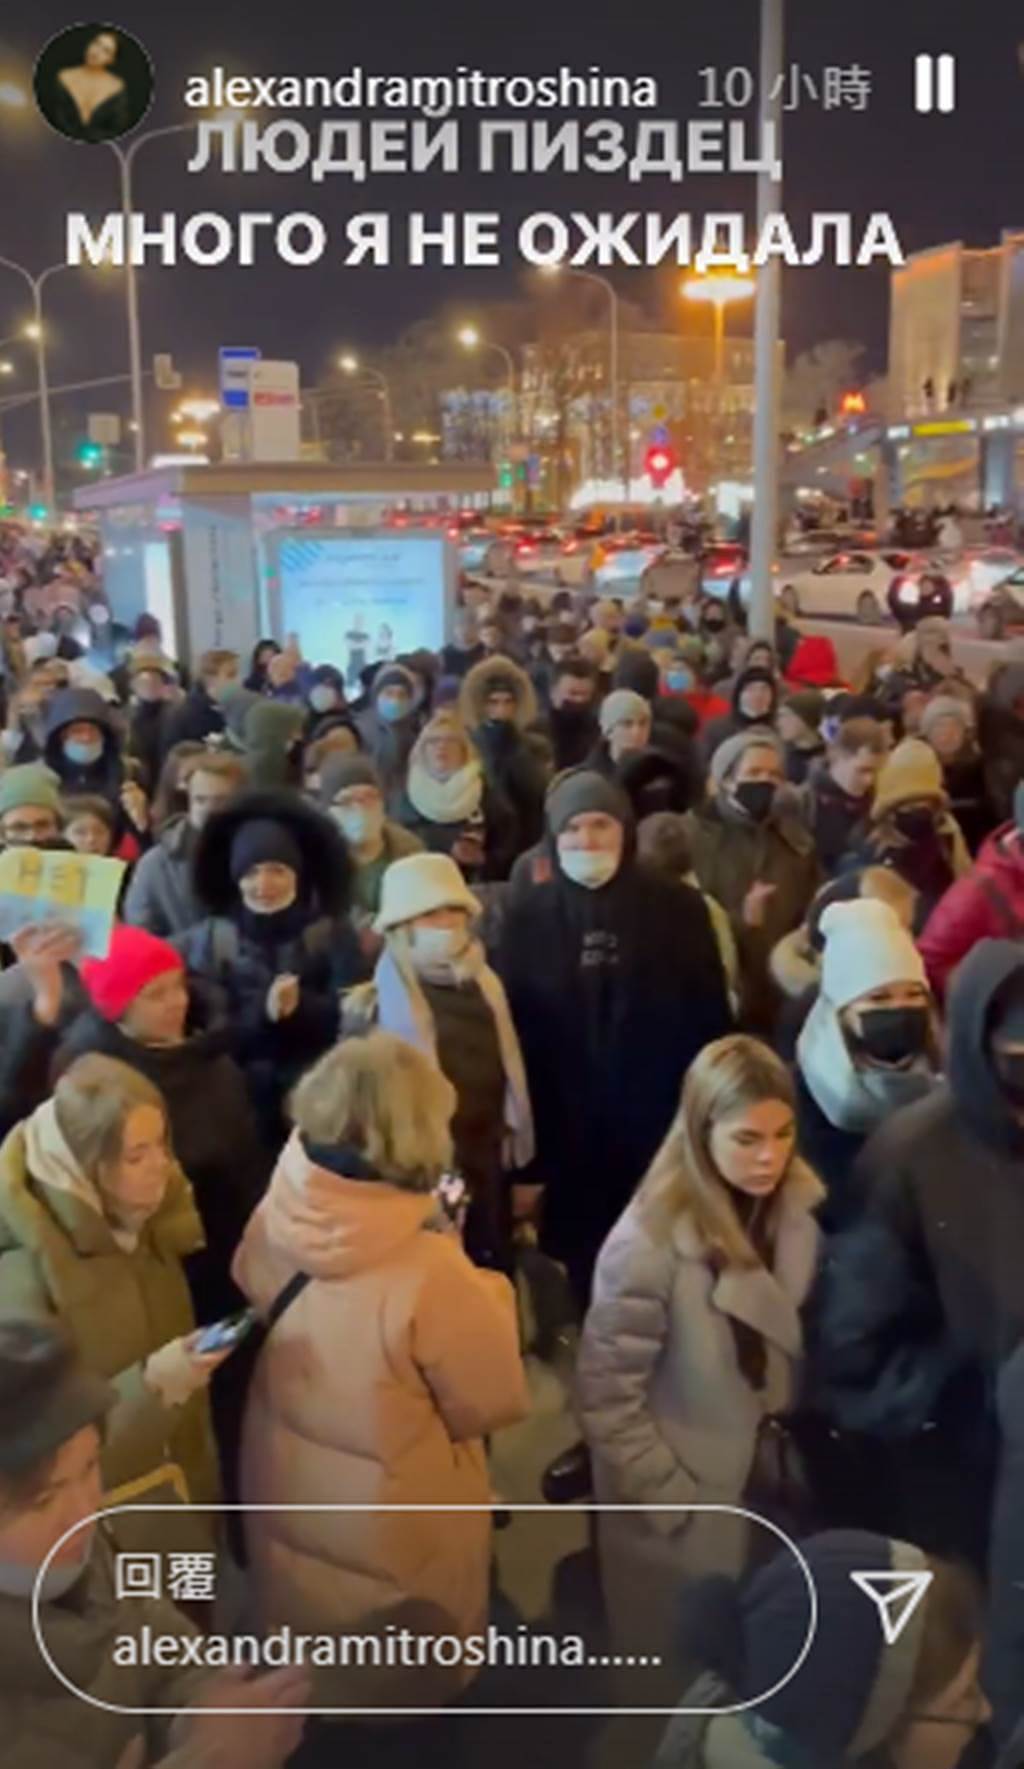 俄罗斯作家米特罗辛娜，晒出俄罗斯民众游行抗议战争的影片。 （alexandramitroshina IG）